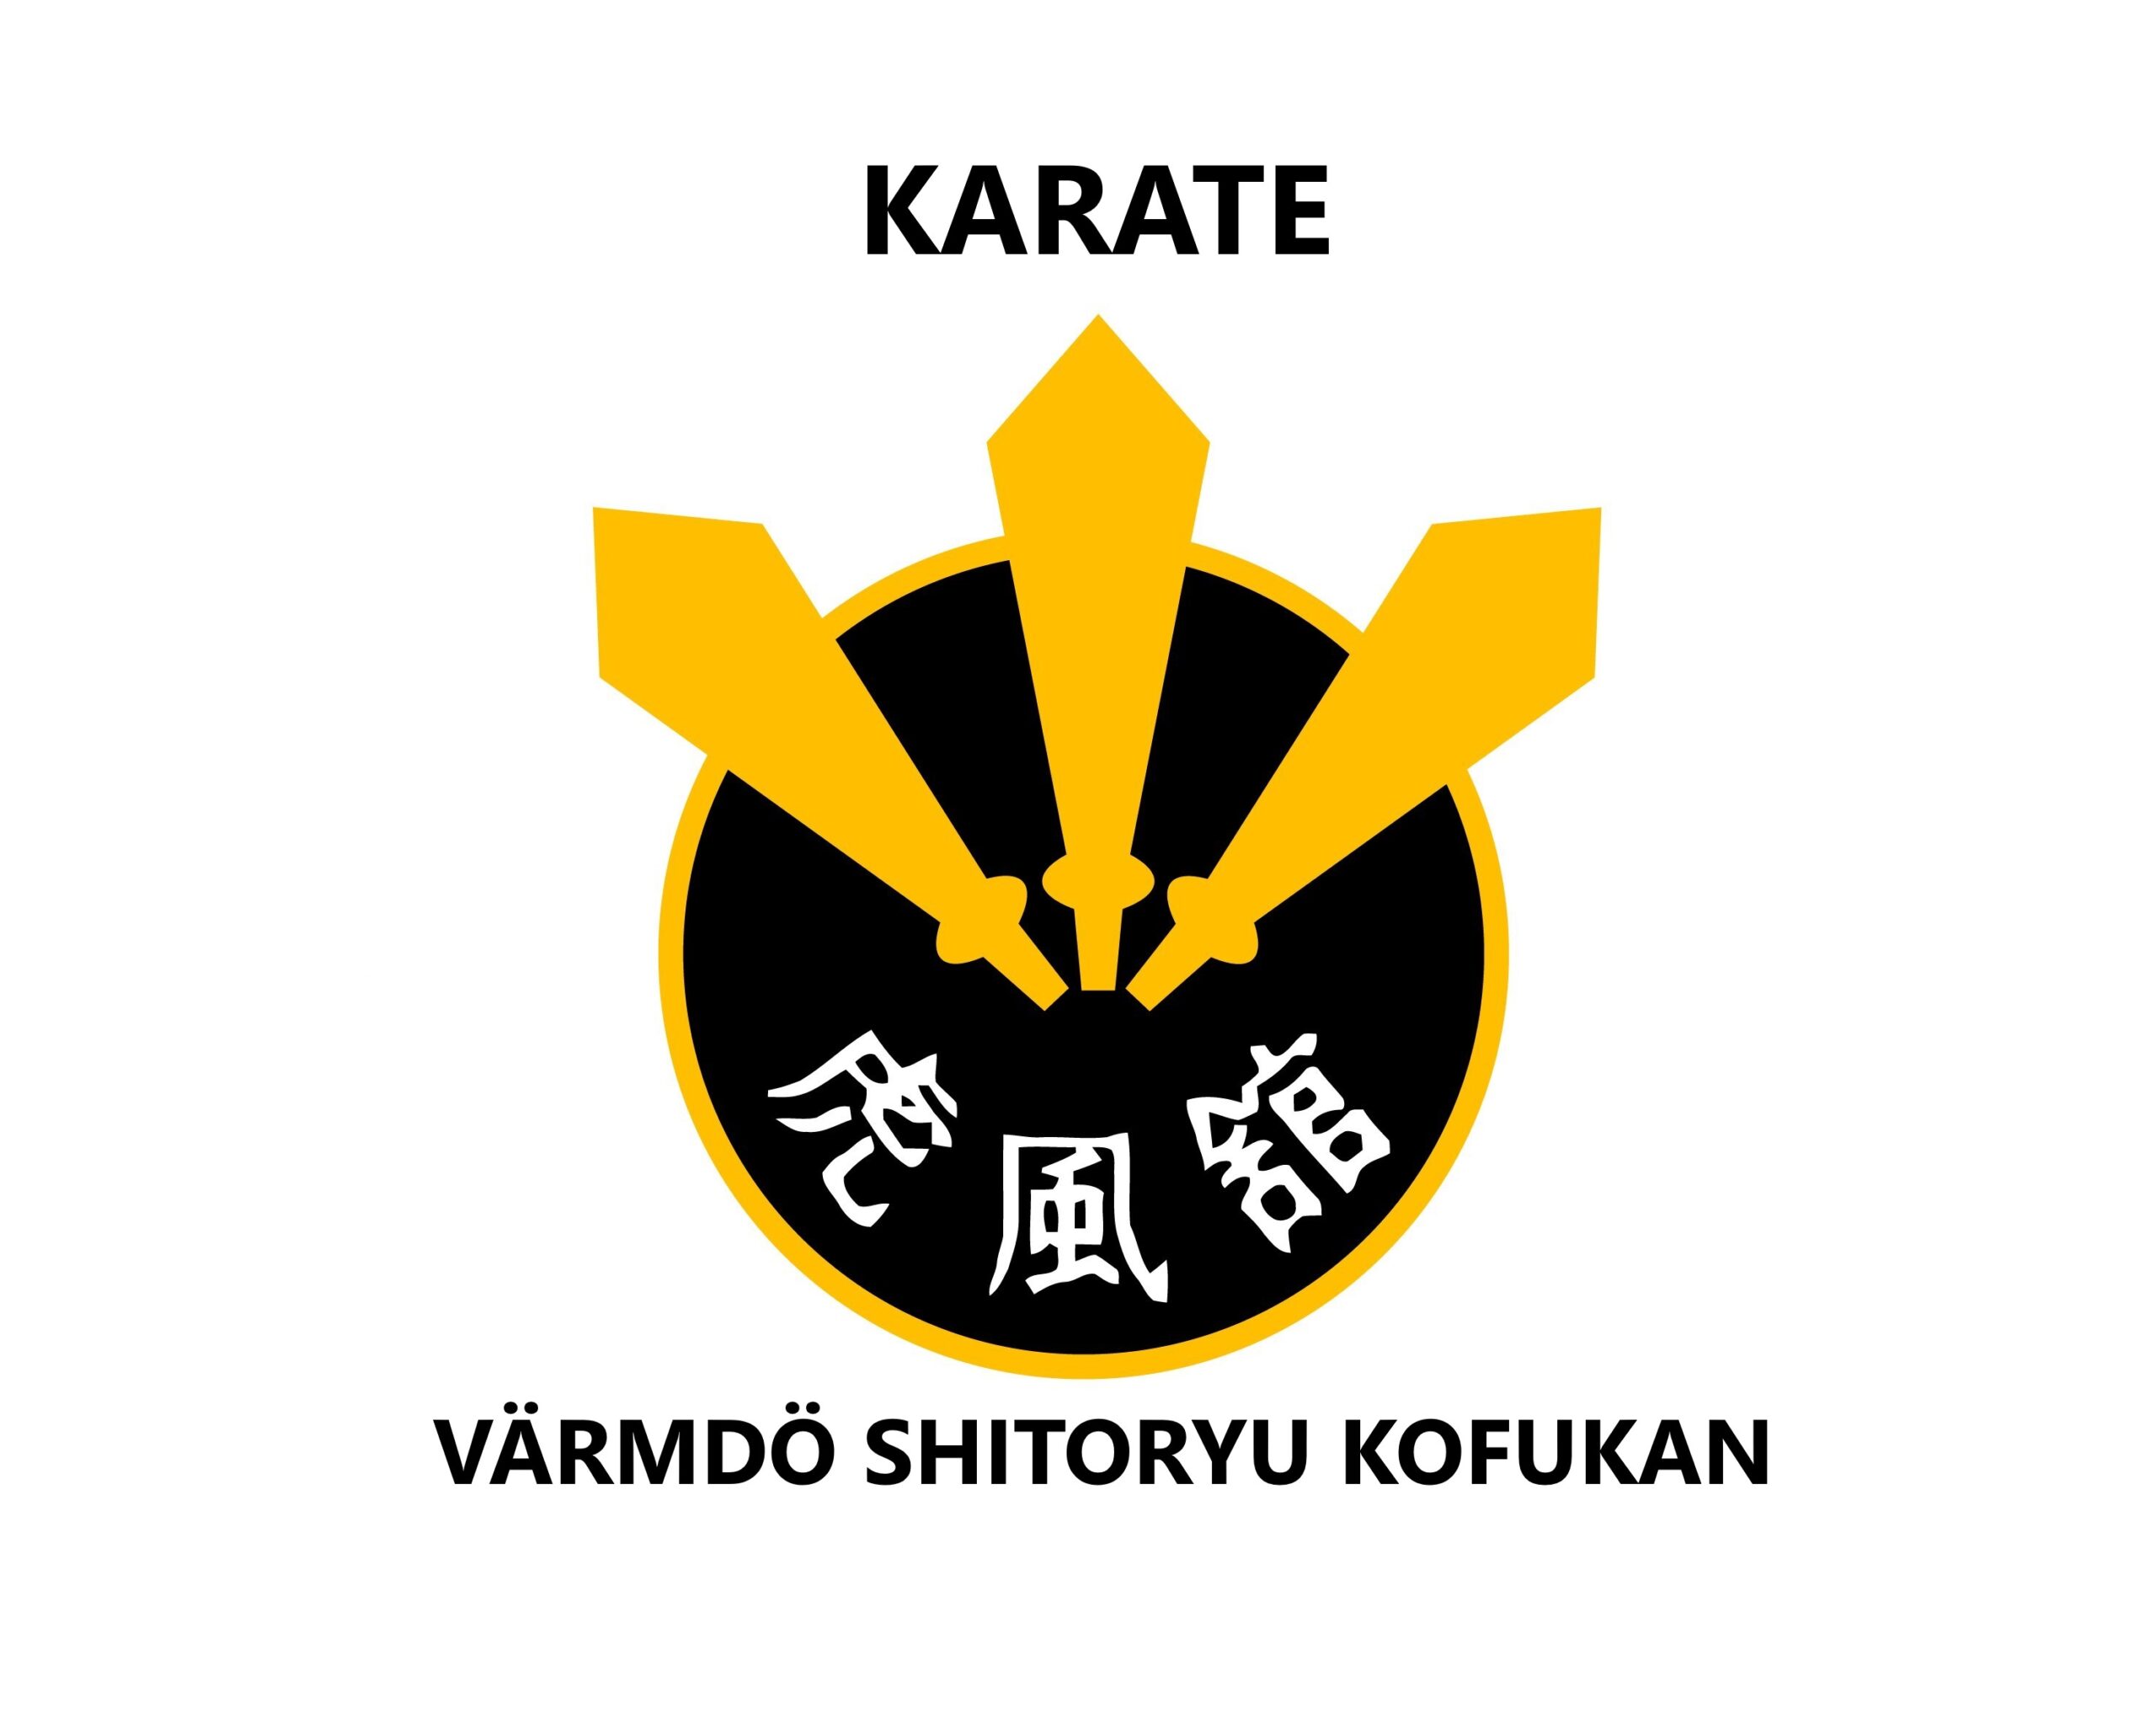 Shitoryu-Kofukn-logo1